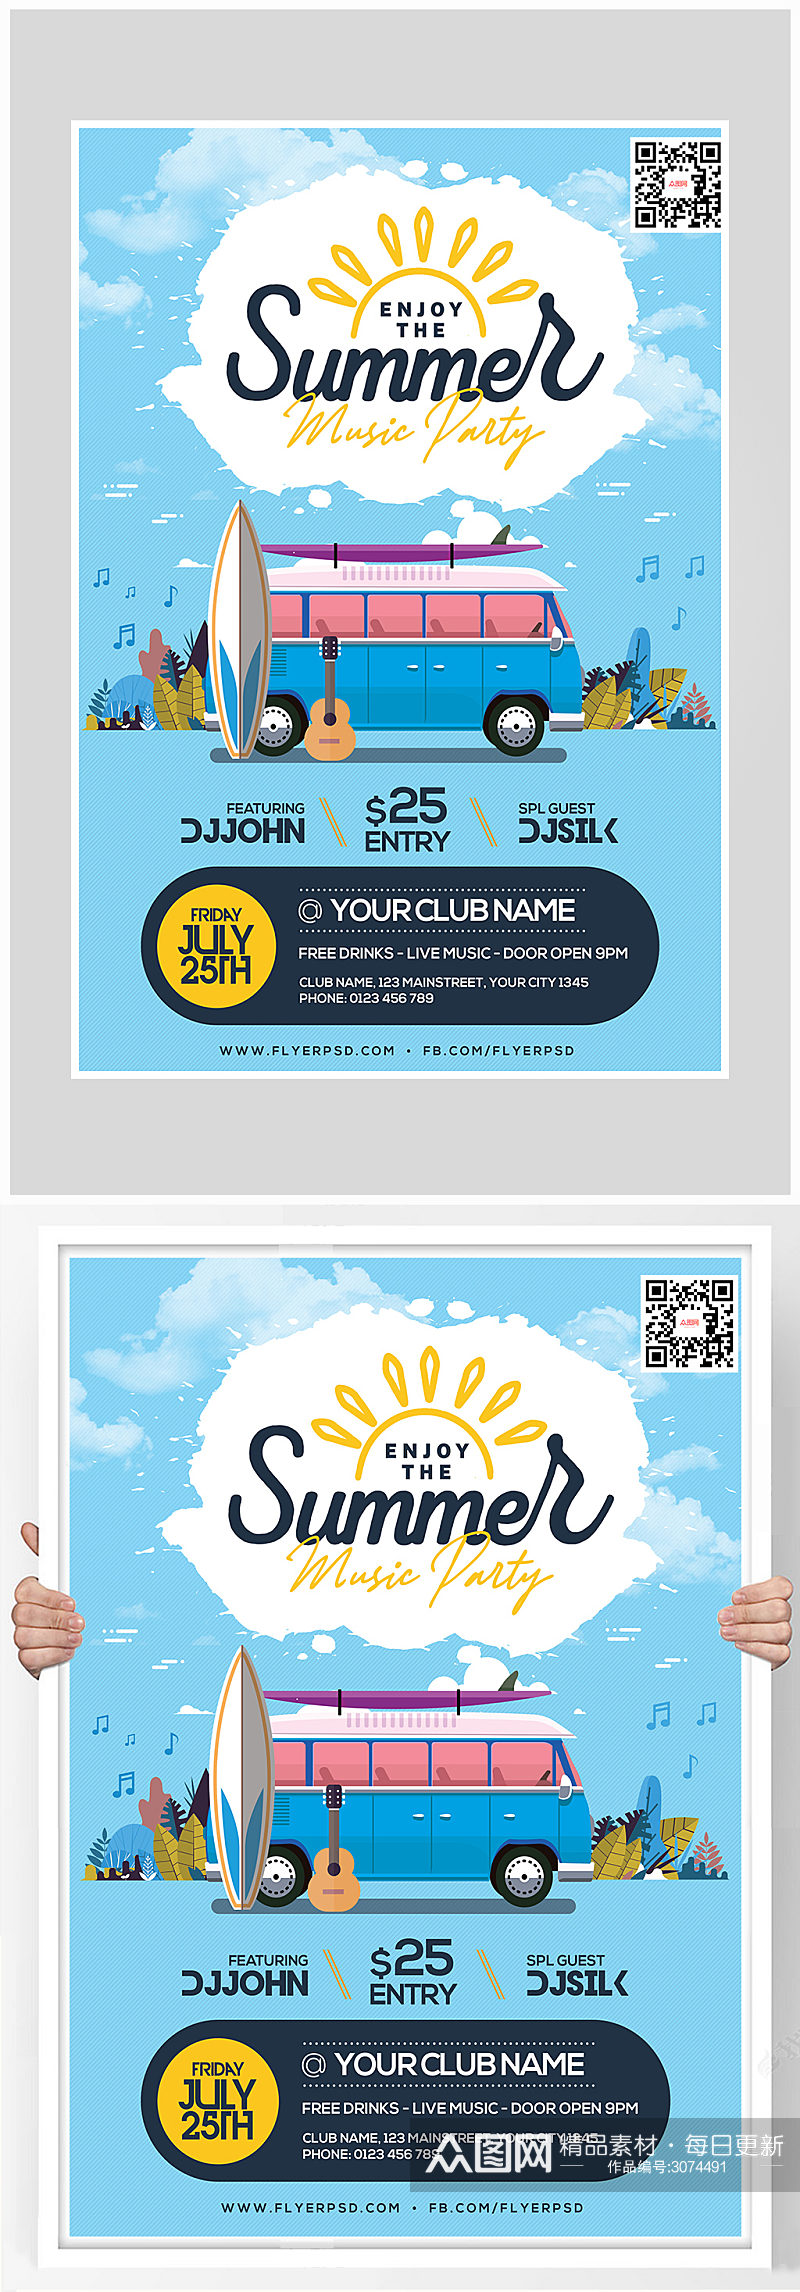 创意扁平化夏季旅游海报设计素材